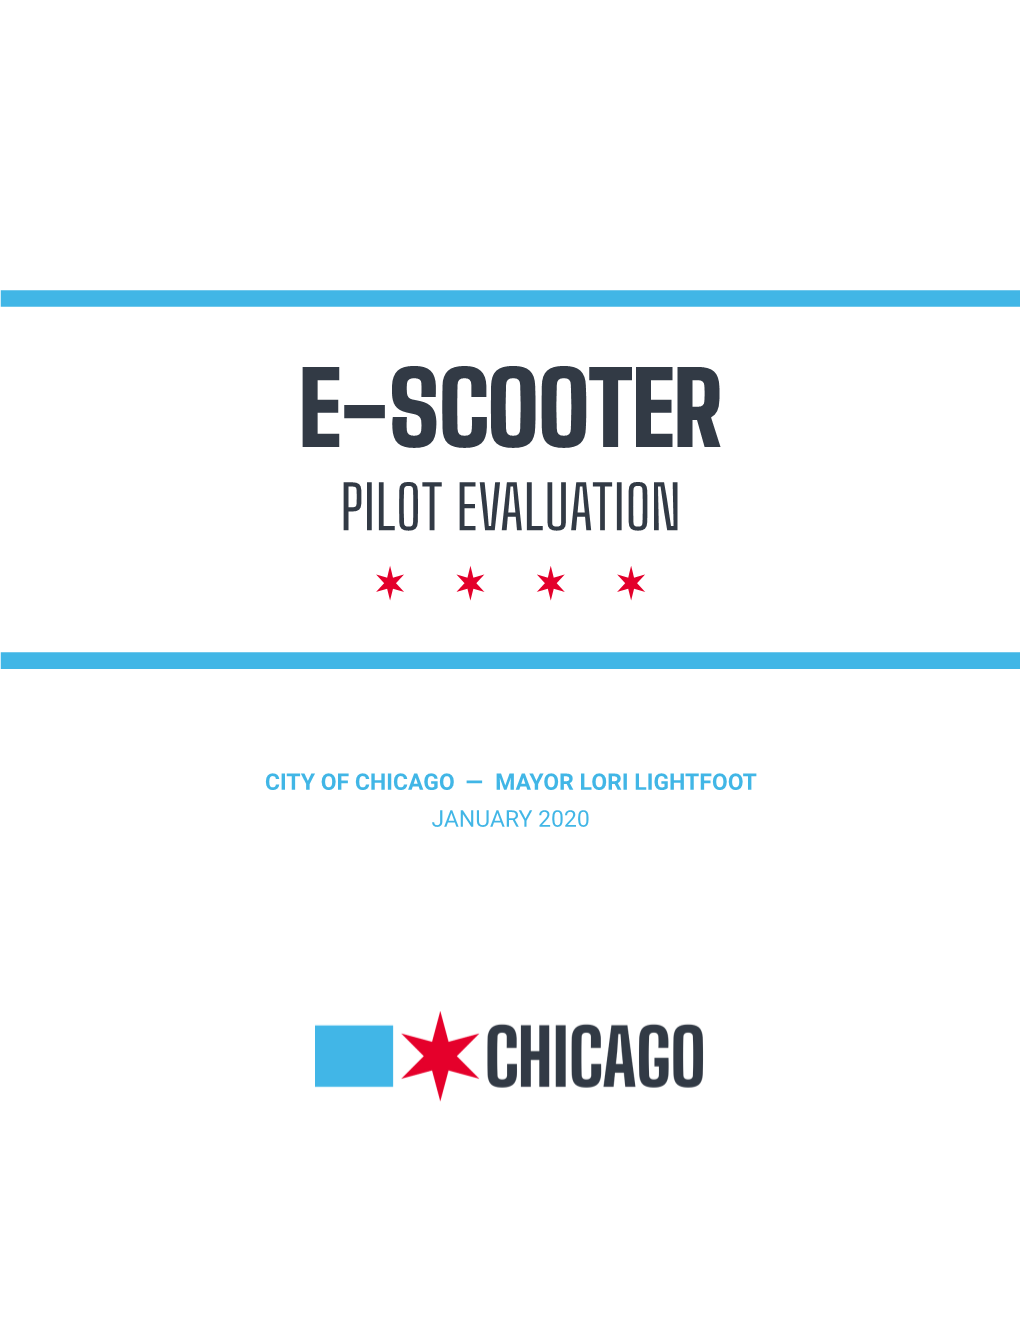 E-Scooter Pilot Evaluation